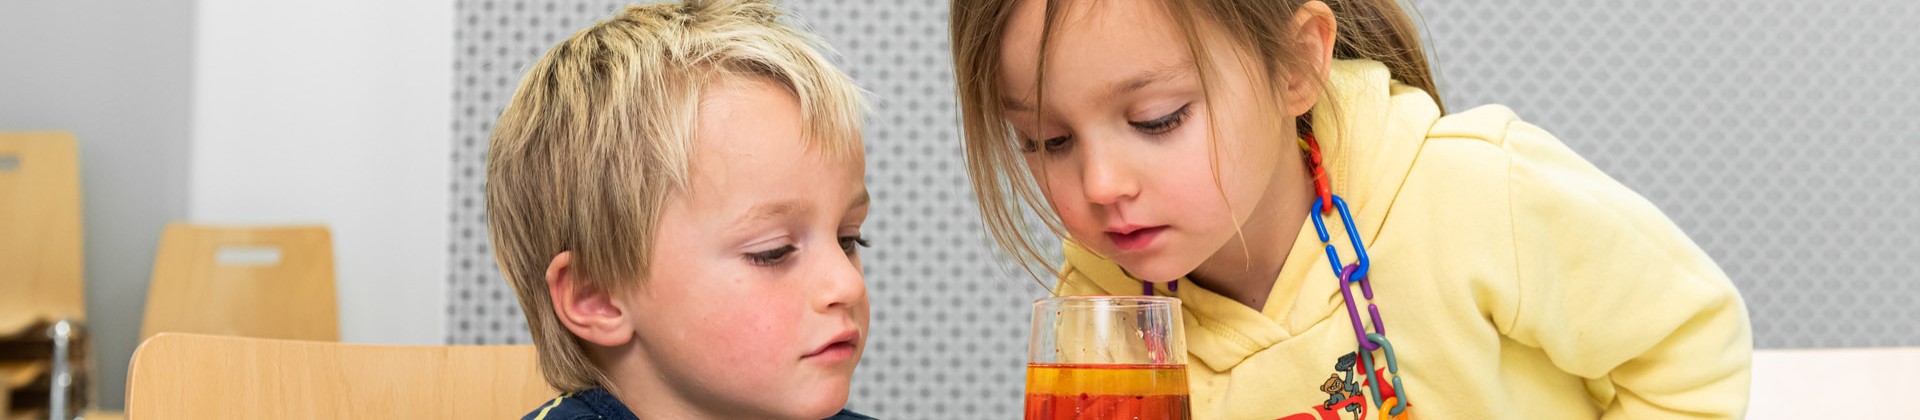 Zwei Kinder schauen sich ein volles Glas an